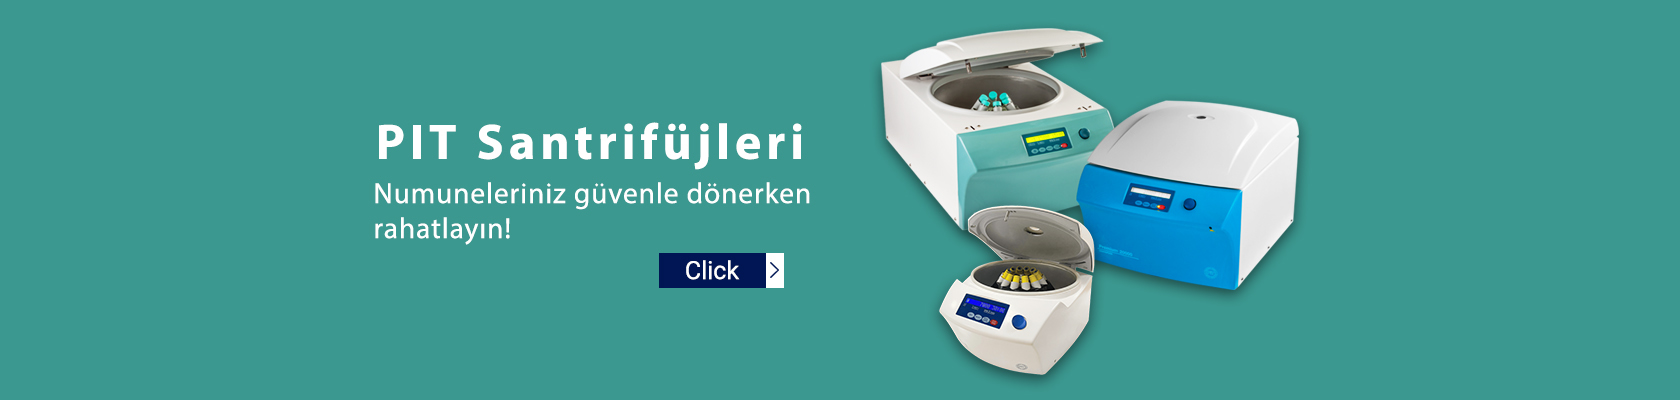 centrifuge-banner-desktop01